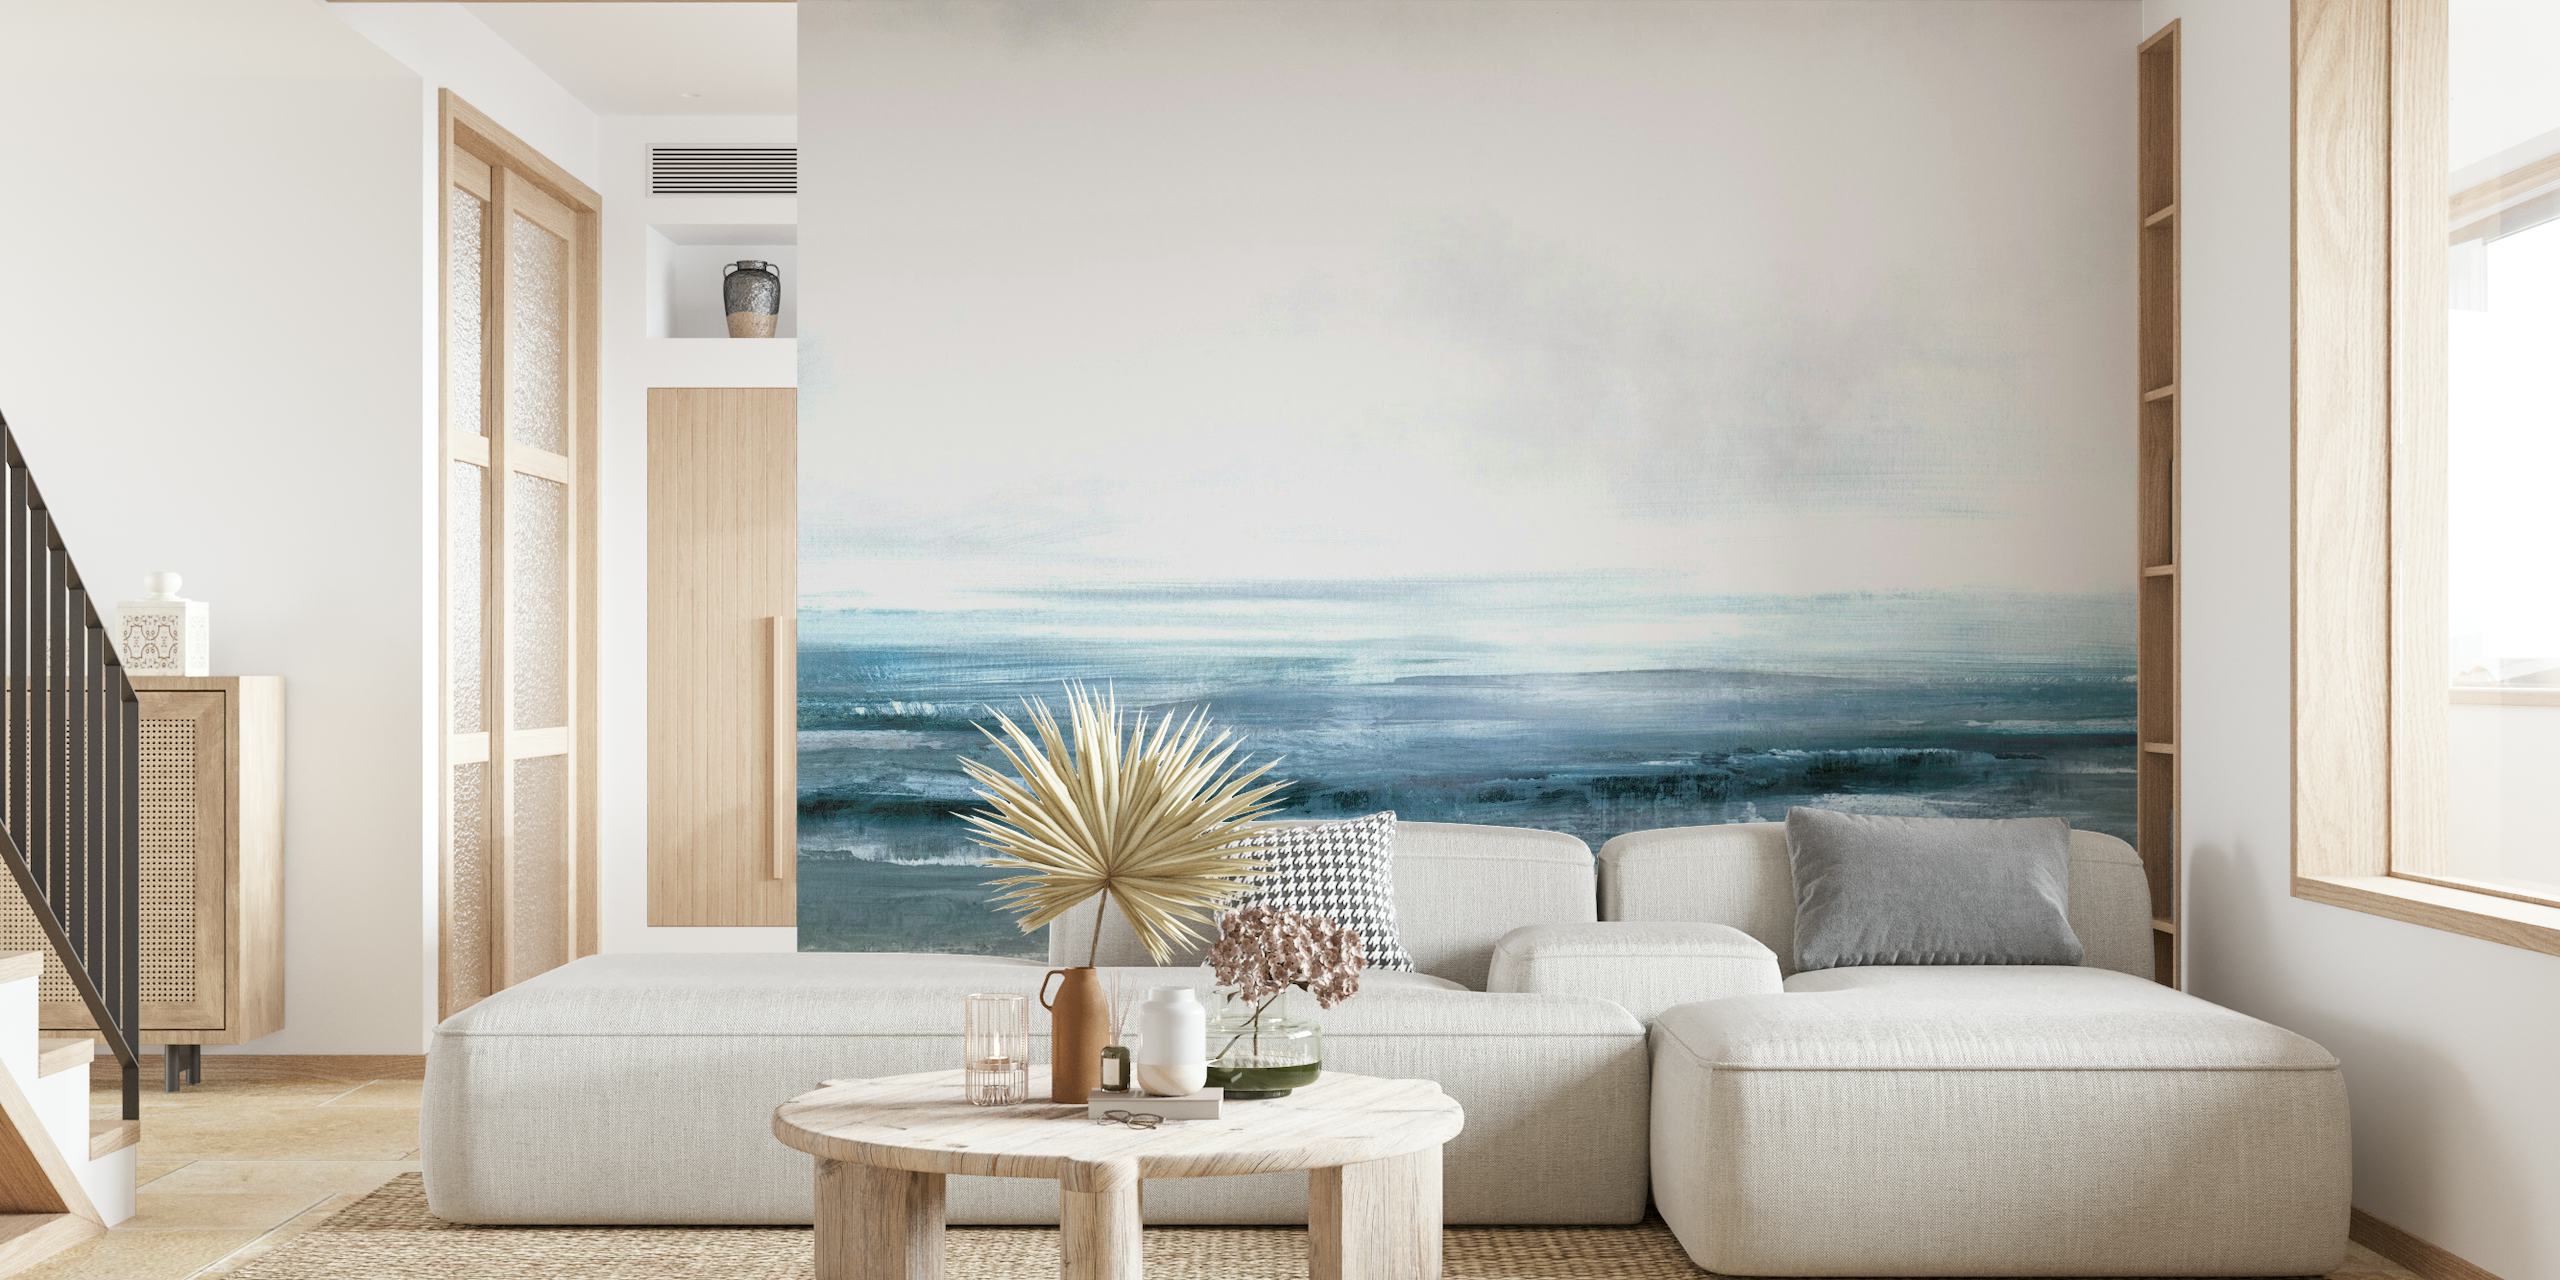 Roligt havhorisont vægmaleri med nuancer af blå og grå